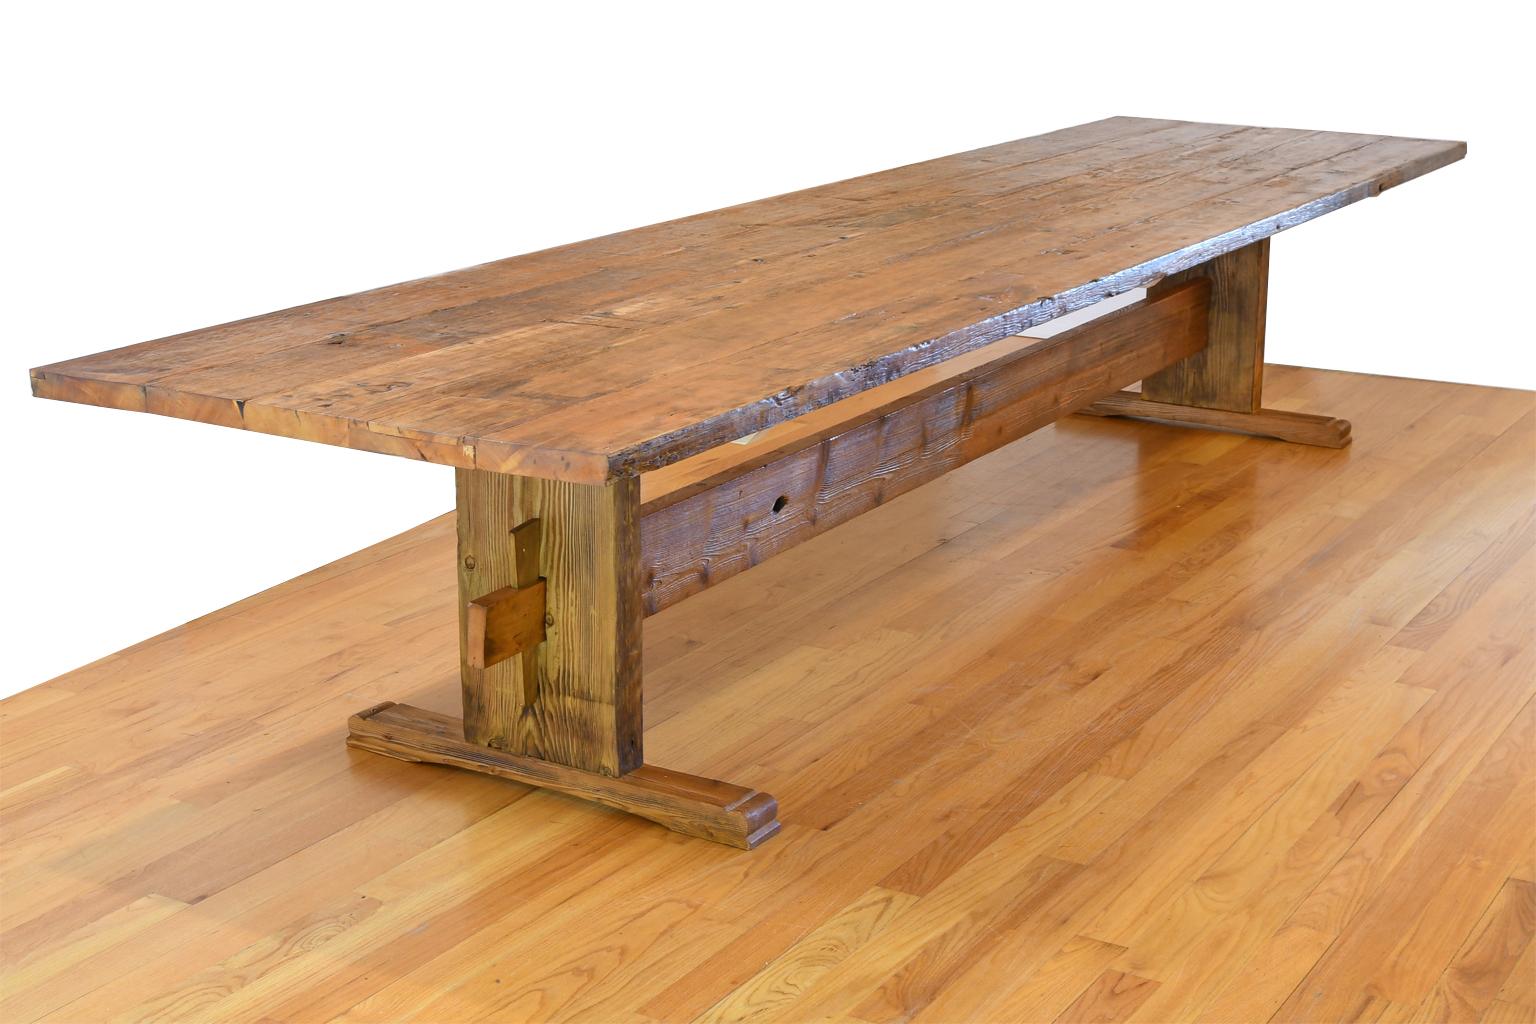 Inspirée d'une ancienne table suédoise du début des années 1800 que nous avions en stock, cette magnifique table de 14 pieds de long est fabriquée à partir de bois de pin ancien recyclé. Le plateau et la base en relief ont été recouverts d'un vernis